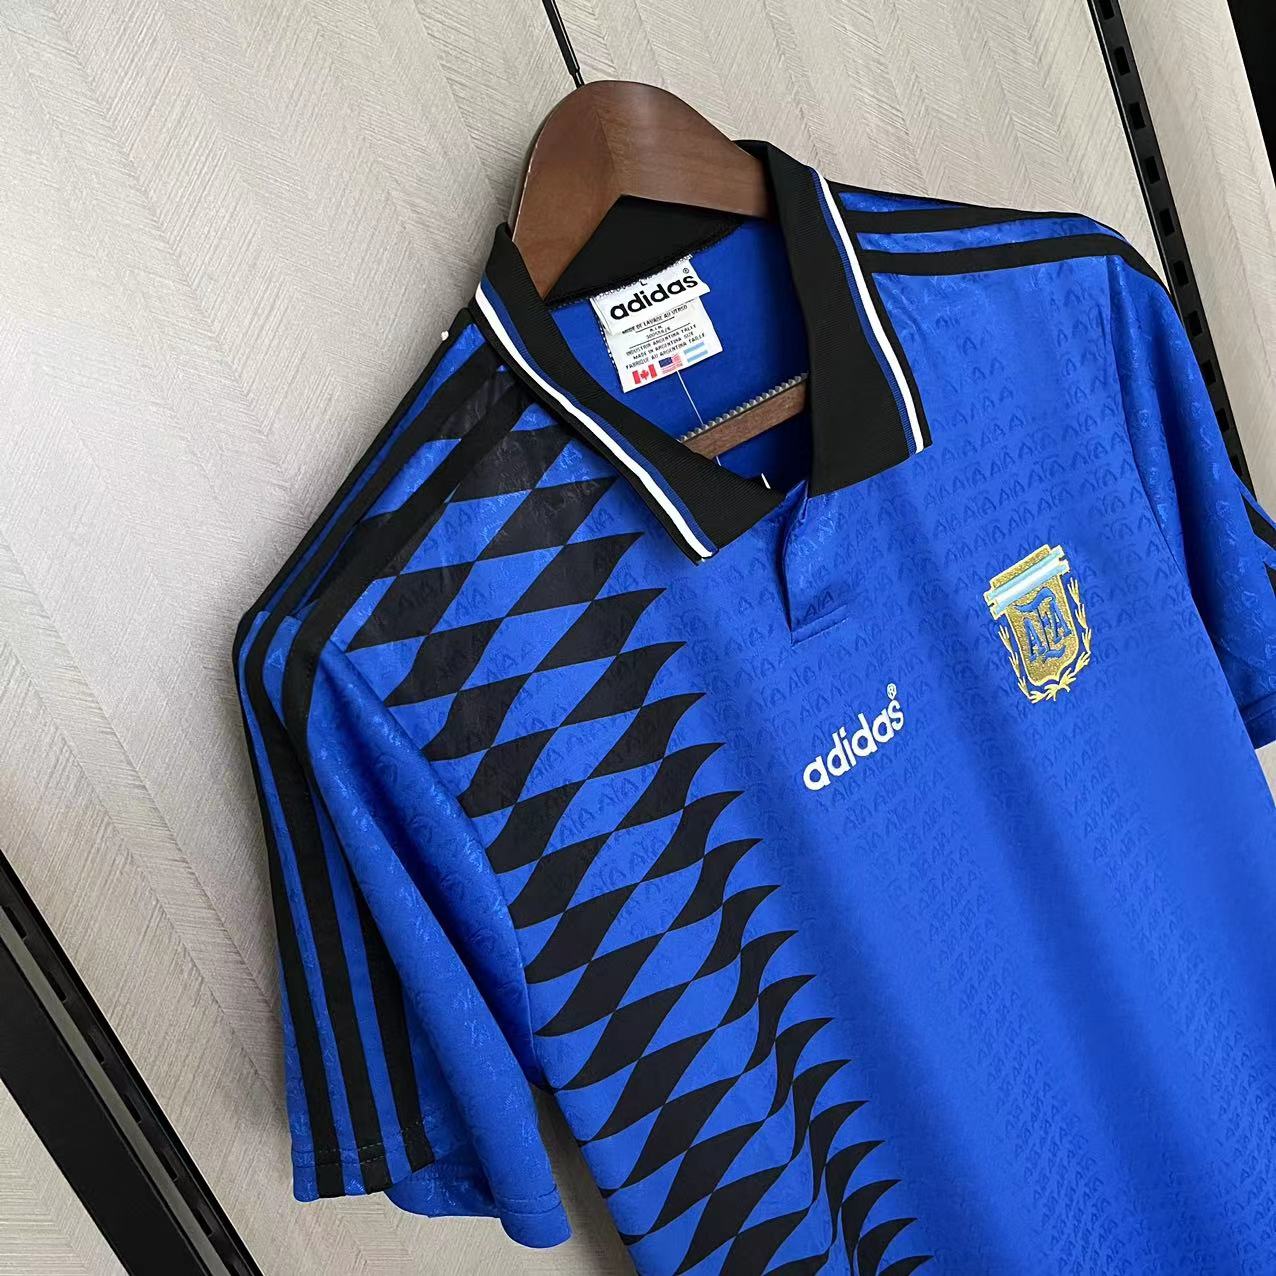 Retro Argentina 1994-95 Away Jerseys Kit